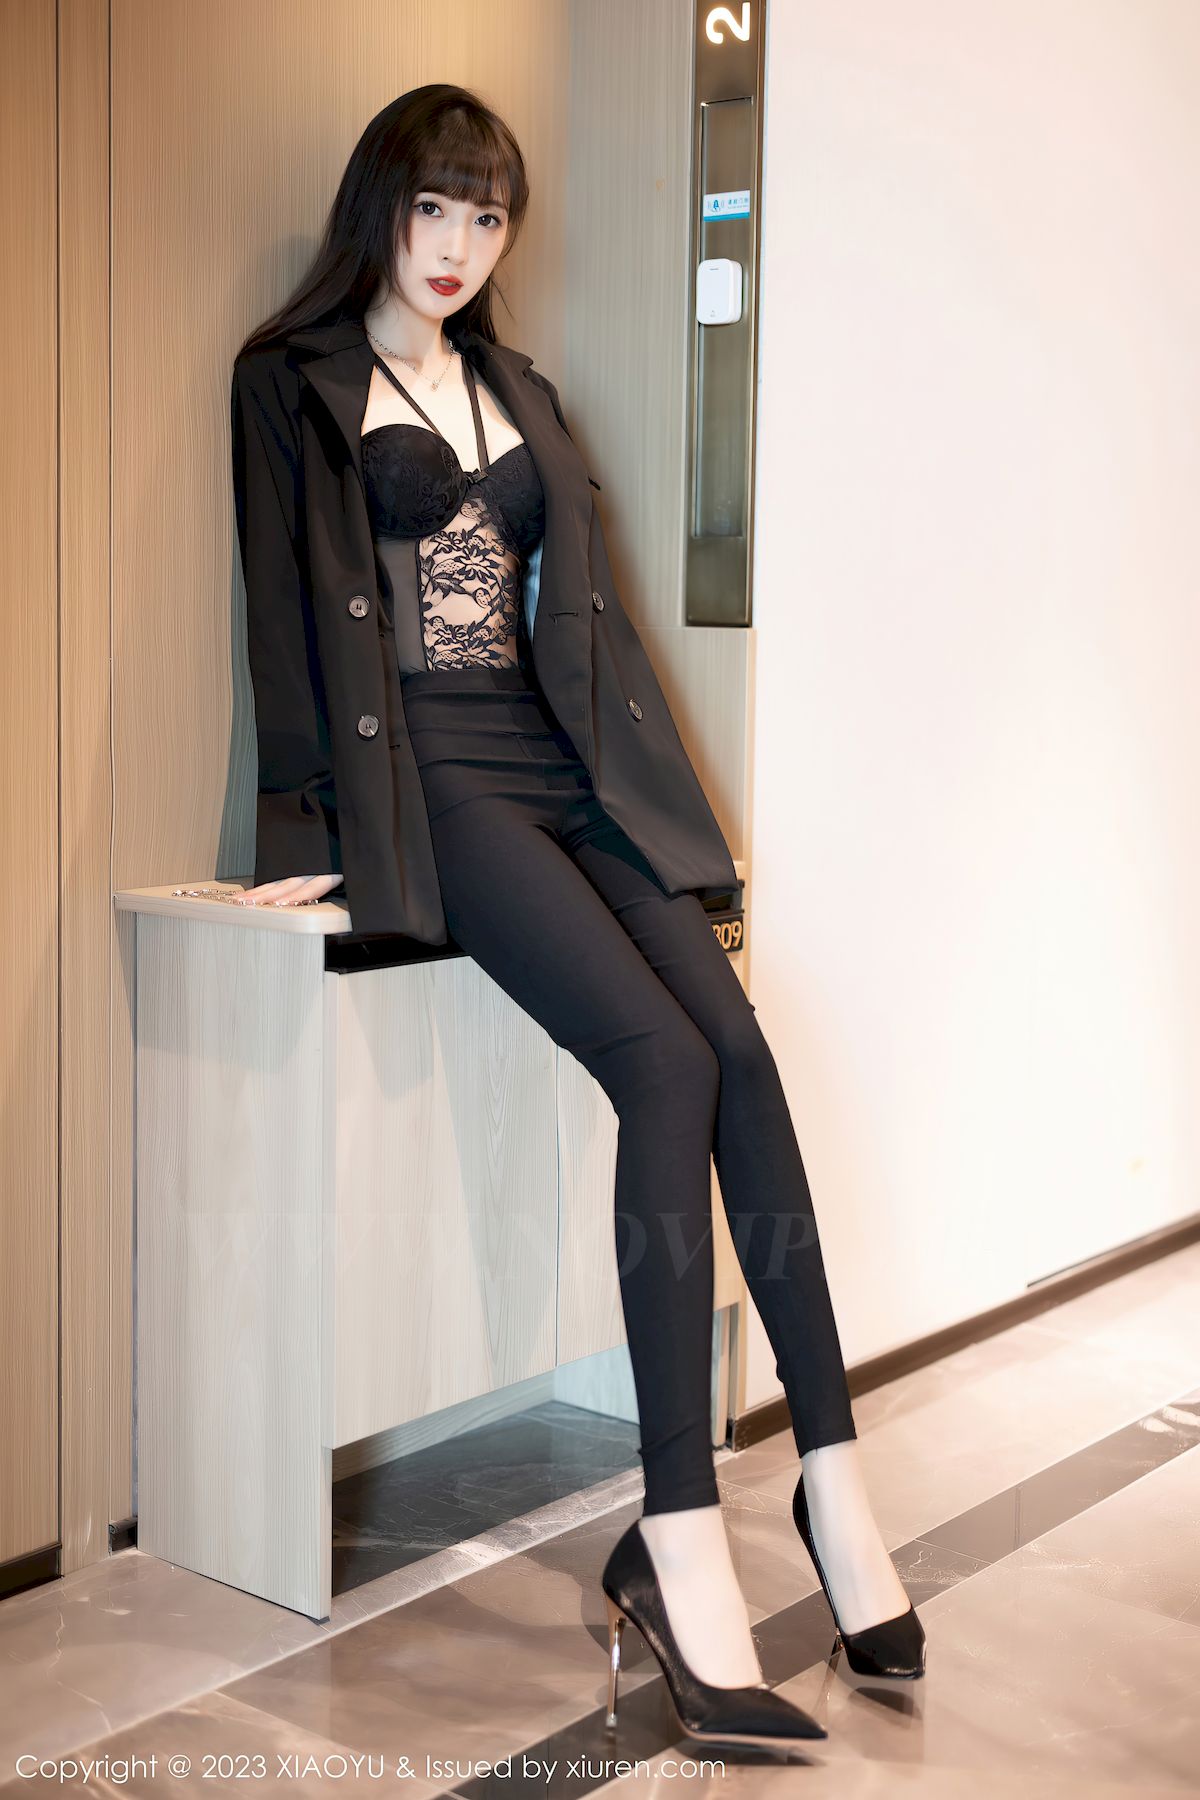 林星阑黑色服饰搭配原色丝袜性感写真